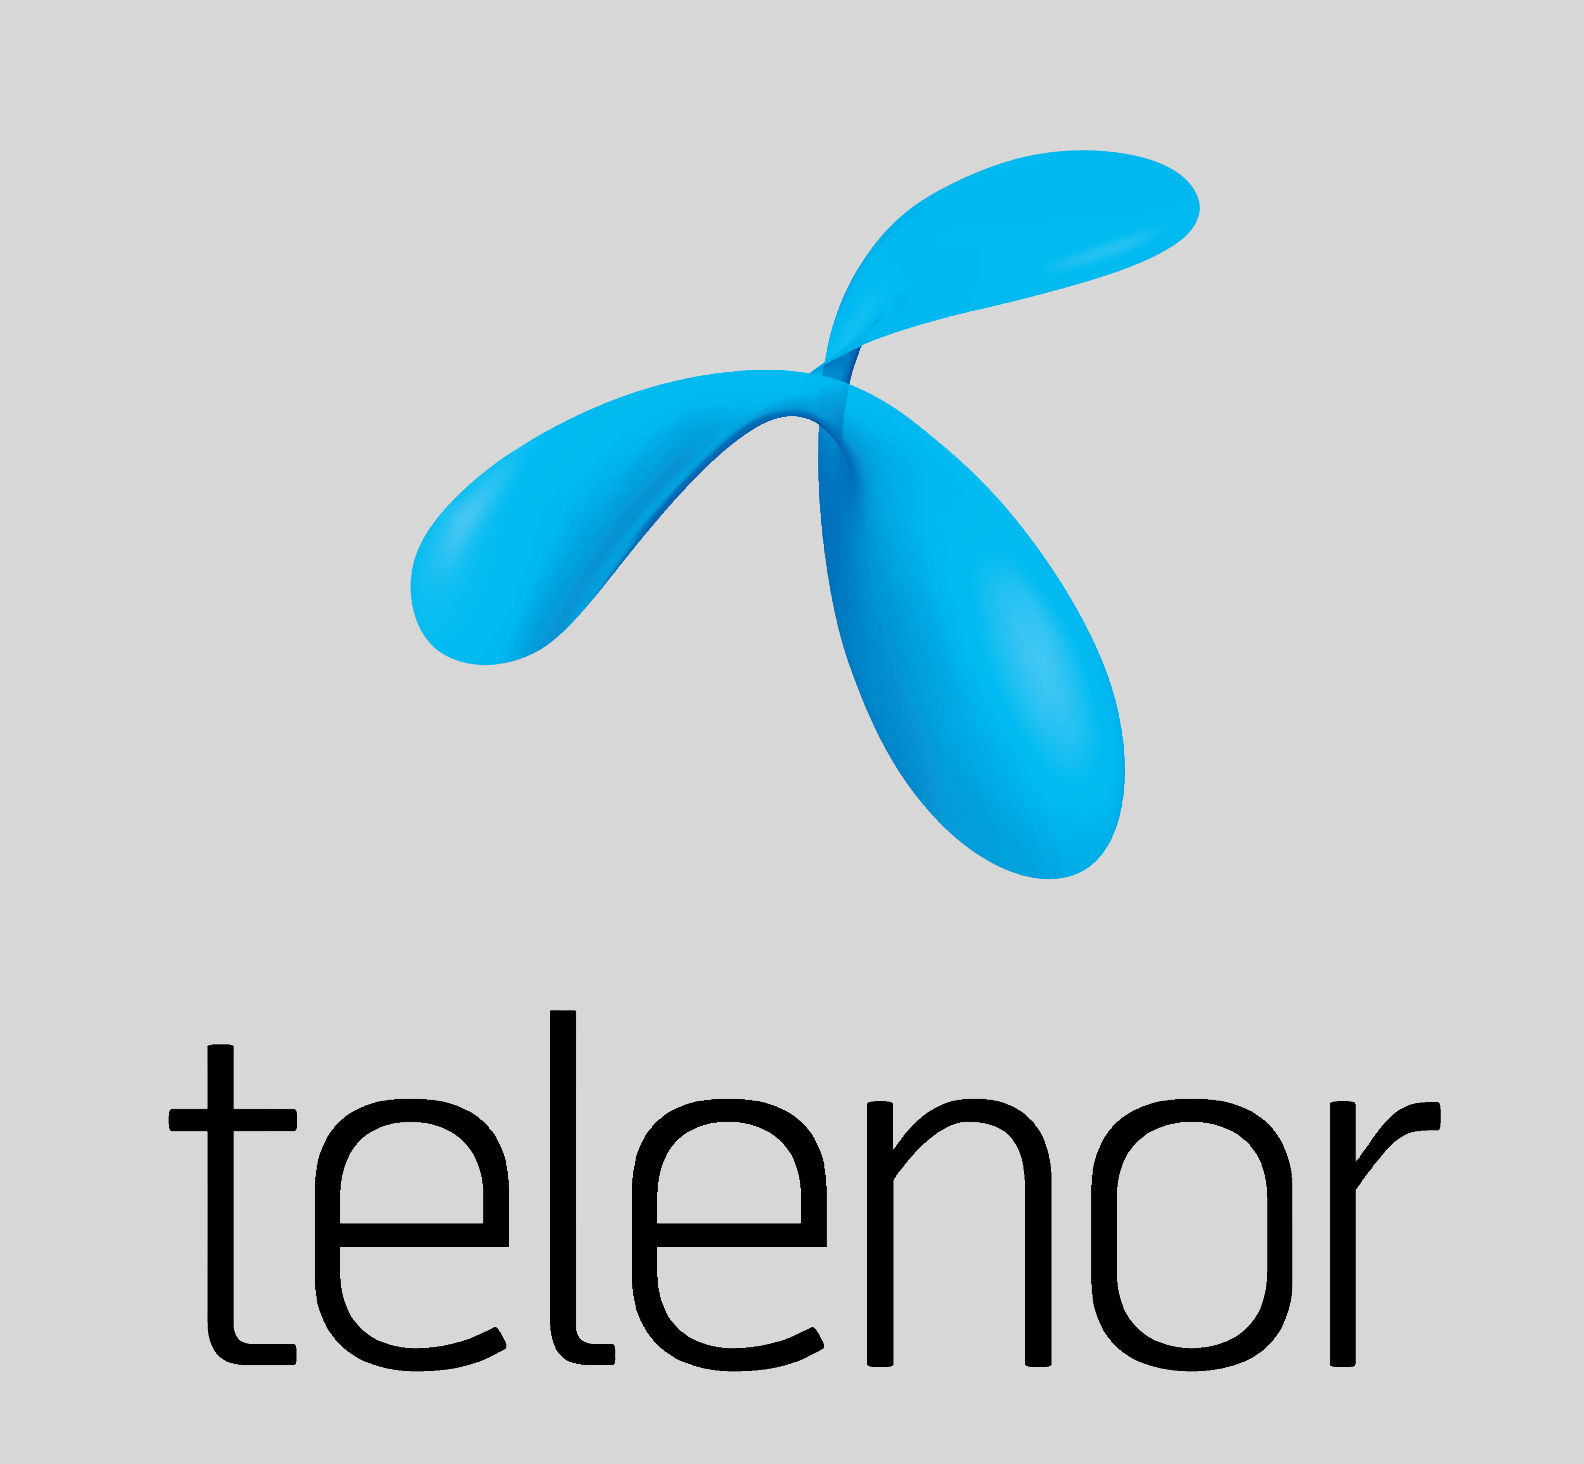 telenor logo png